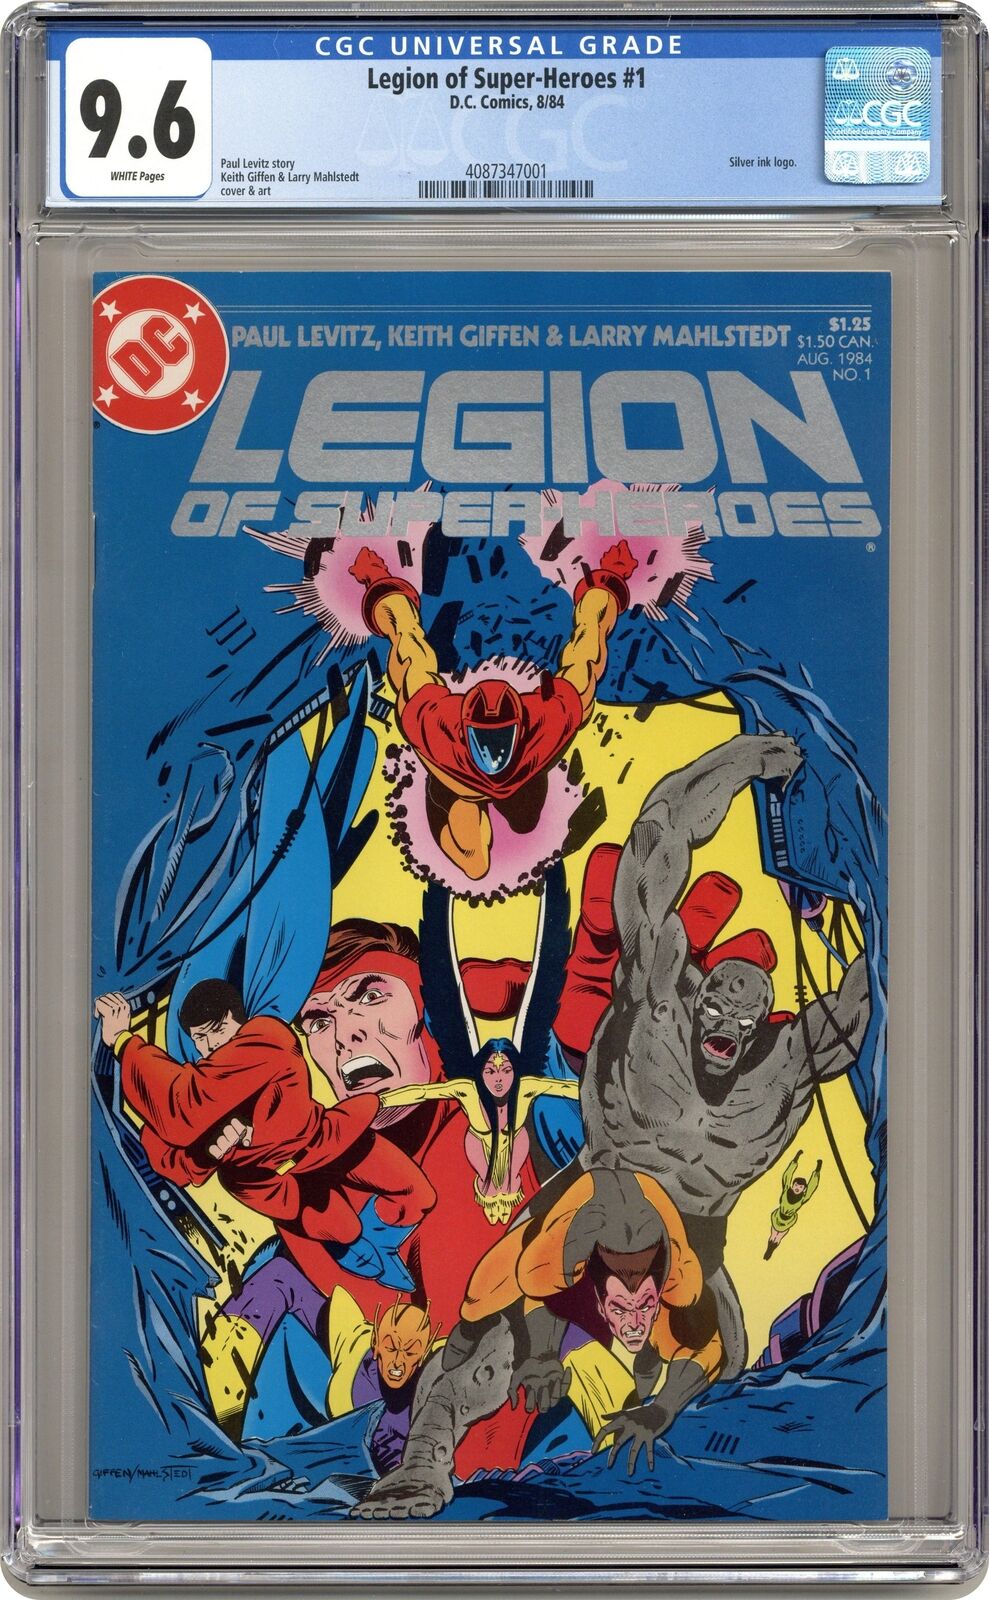 Legion of Super-Heroes #1 CGC 9.6 1984 4087347001